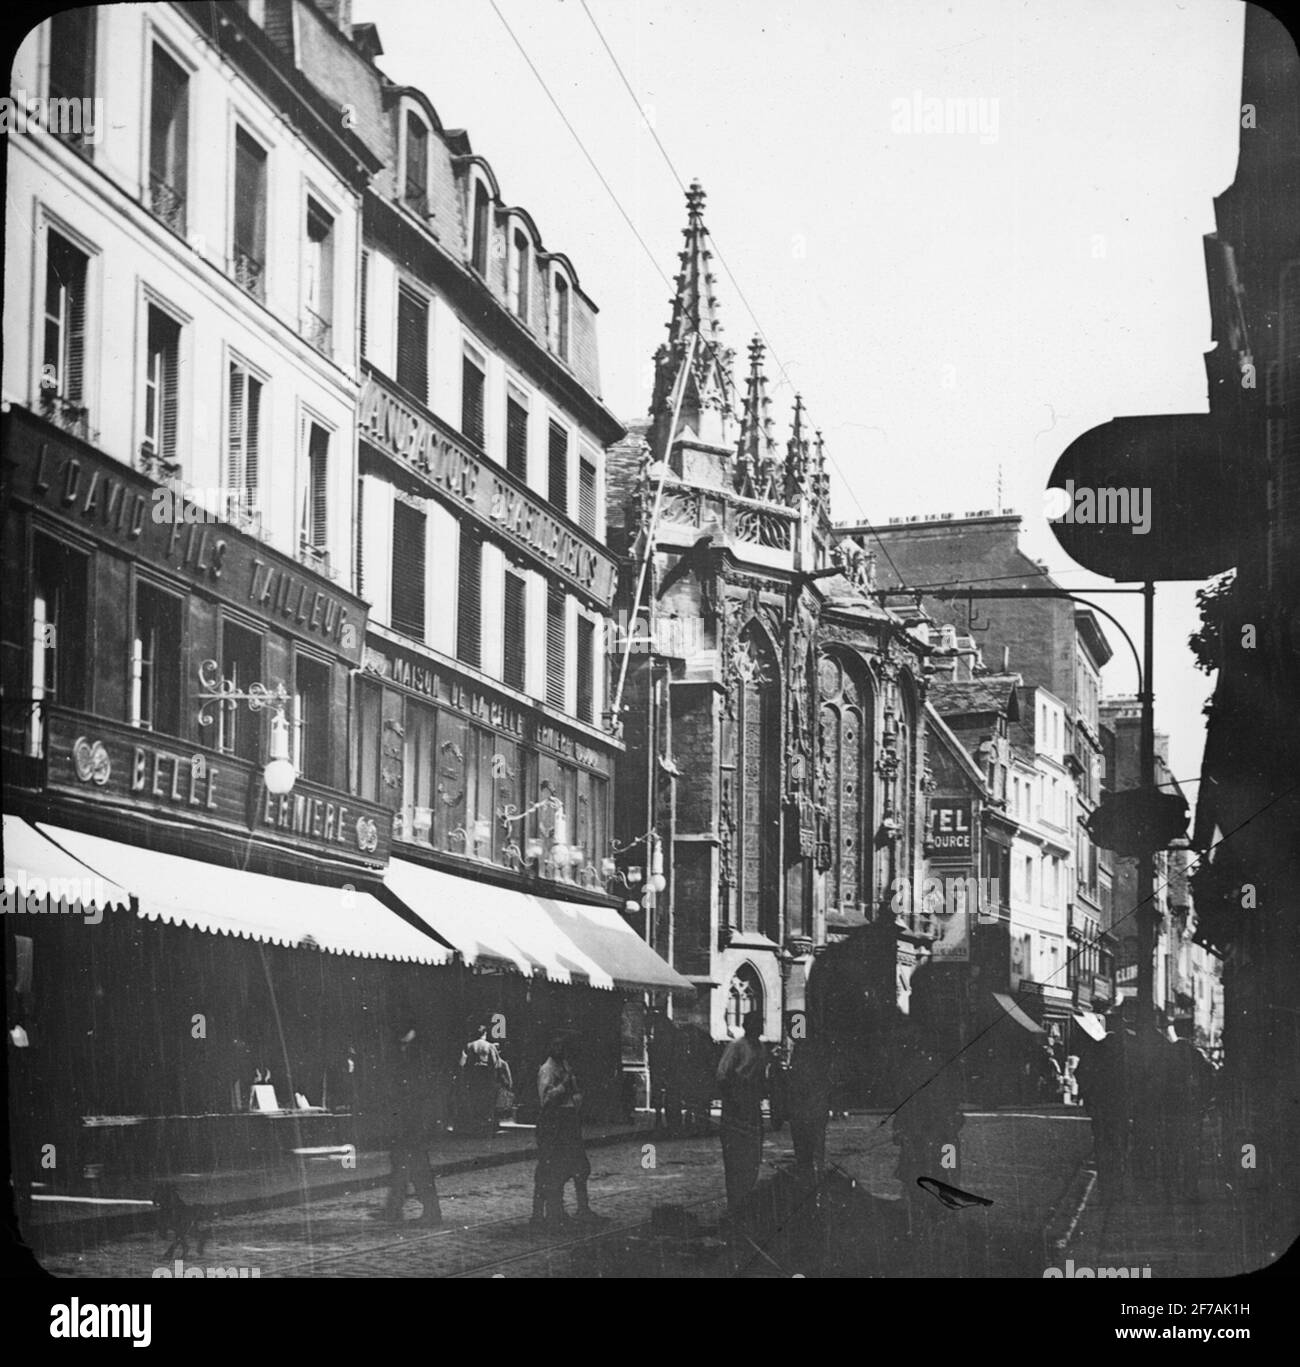 SkiopT-Ikone mit Motiven aus Caen mit Église Saint-Sauveur.das Bild wurde in Karton mit der Aufschrift: The Journey in 1908 gespeichert. Bayeux 8. Xi. Text auf Bild: 'EGL. St. Sauveur“. Stockfoto